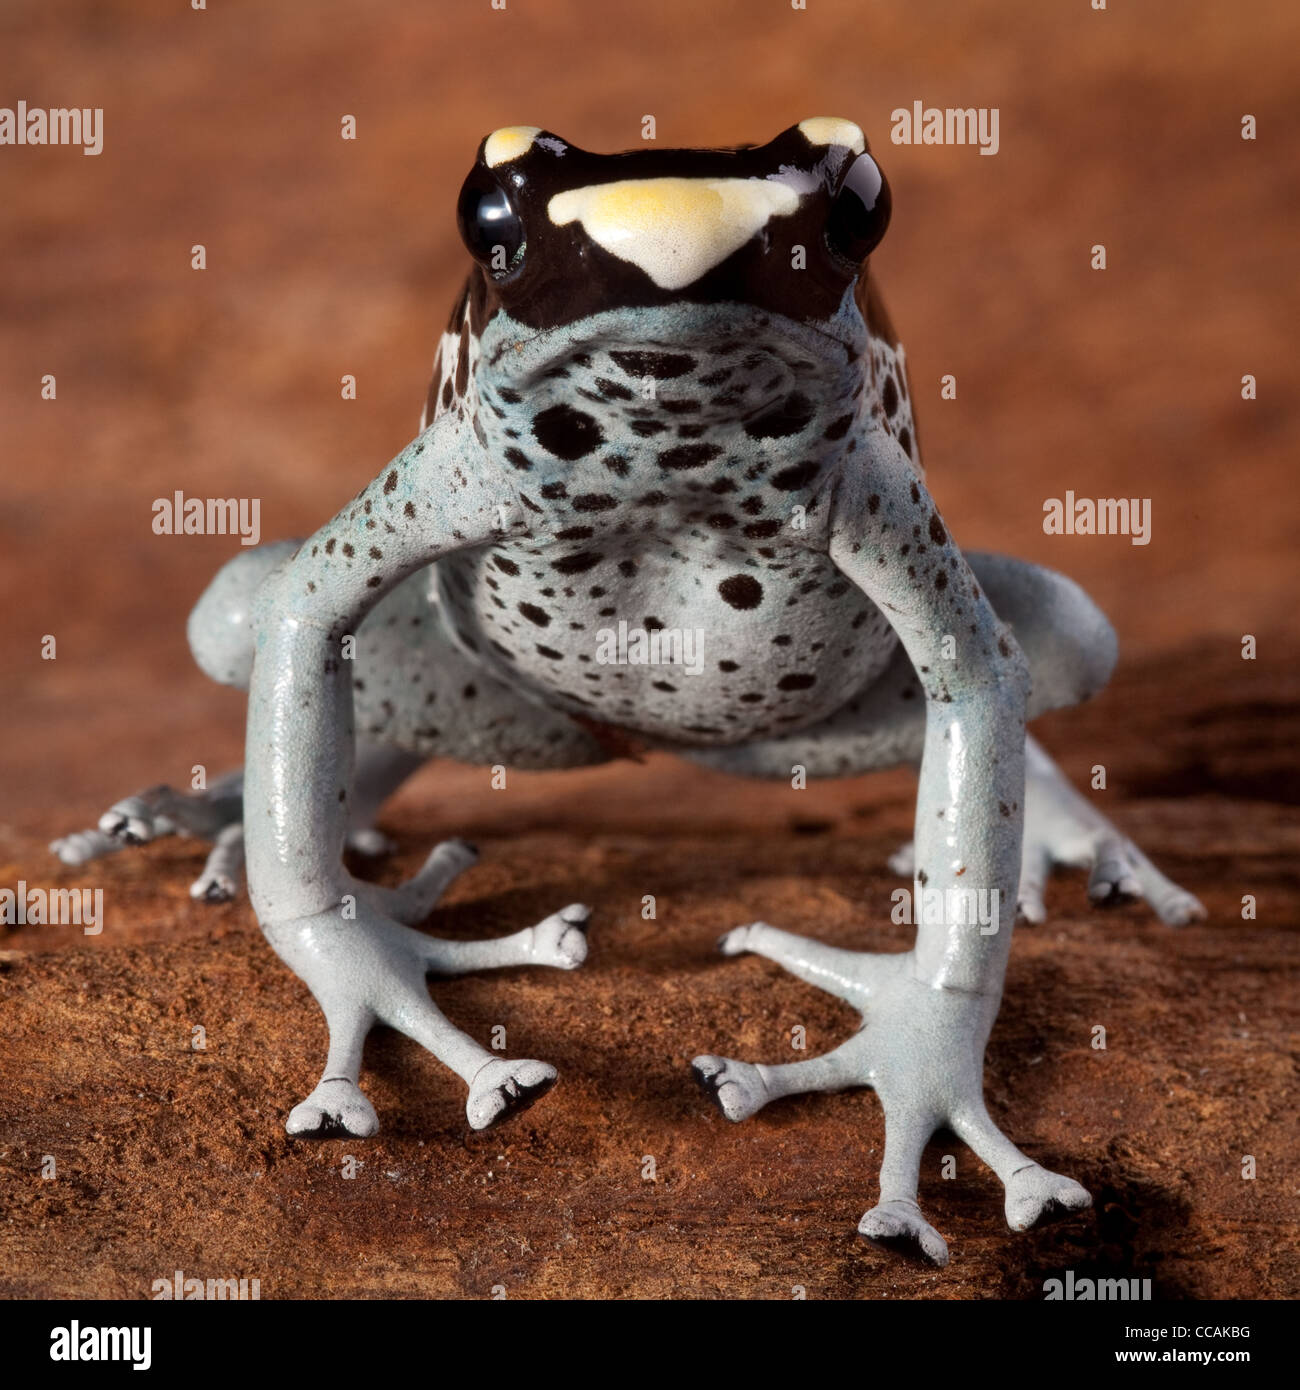 poison dart frog,Dendrobates tinctorius, Suriname Amazon rain forest Stock Photo